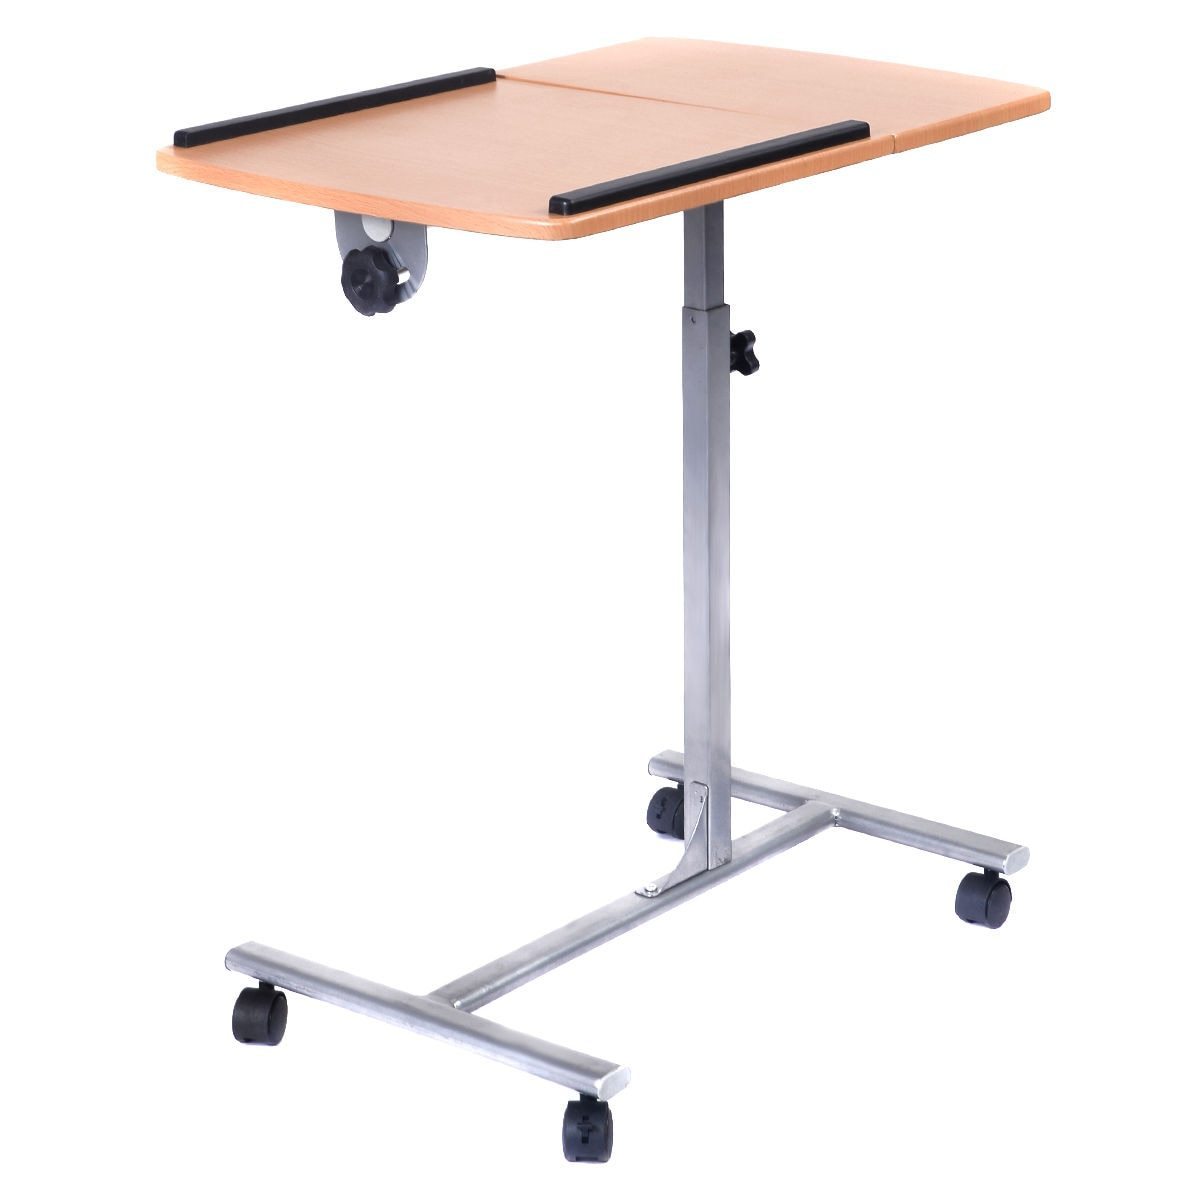 Adjustable Laptop Modern Desk - Stand Holder